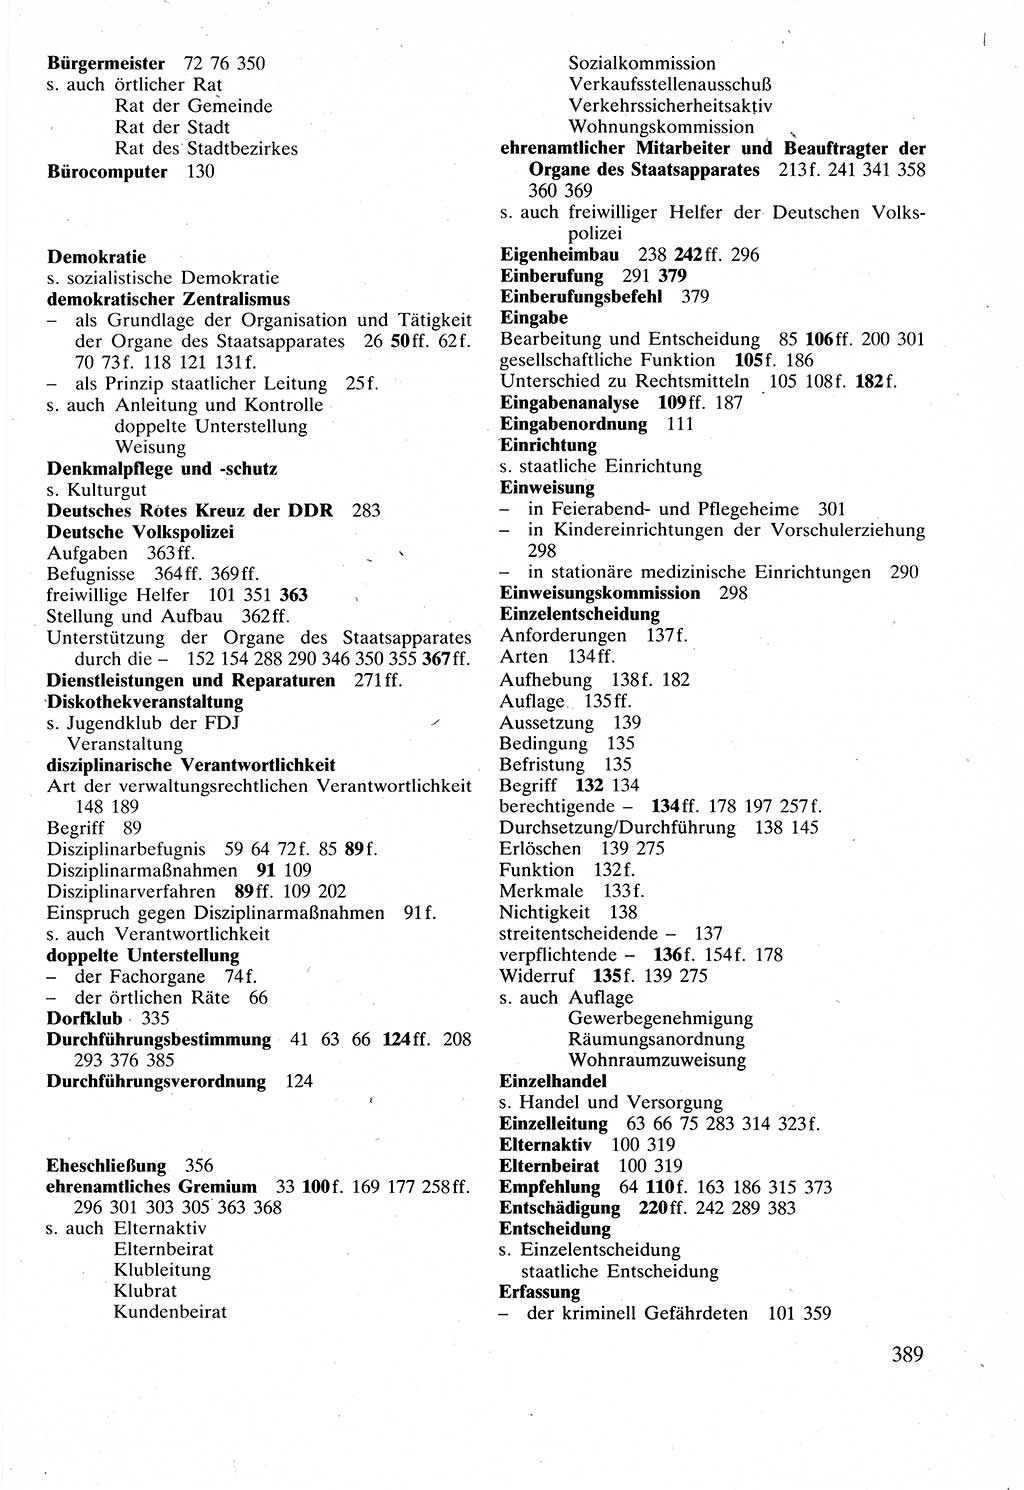 Verwaltungsrecht [Deutsche Demokratische Republik (DDR)], Lehrbuch 1988, Seite 389 (Verw.-R. DDR Lb. 1988, S. 389)